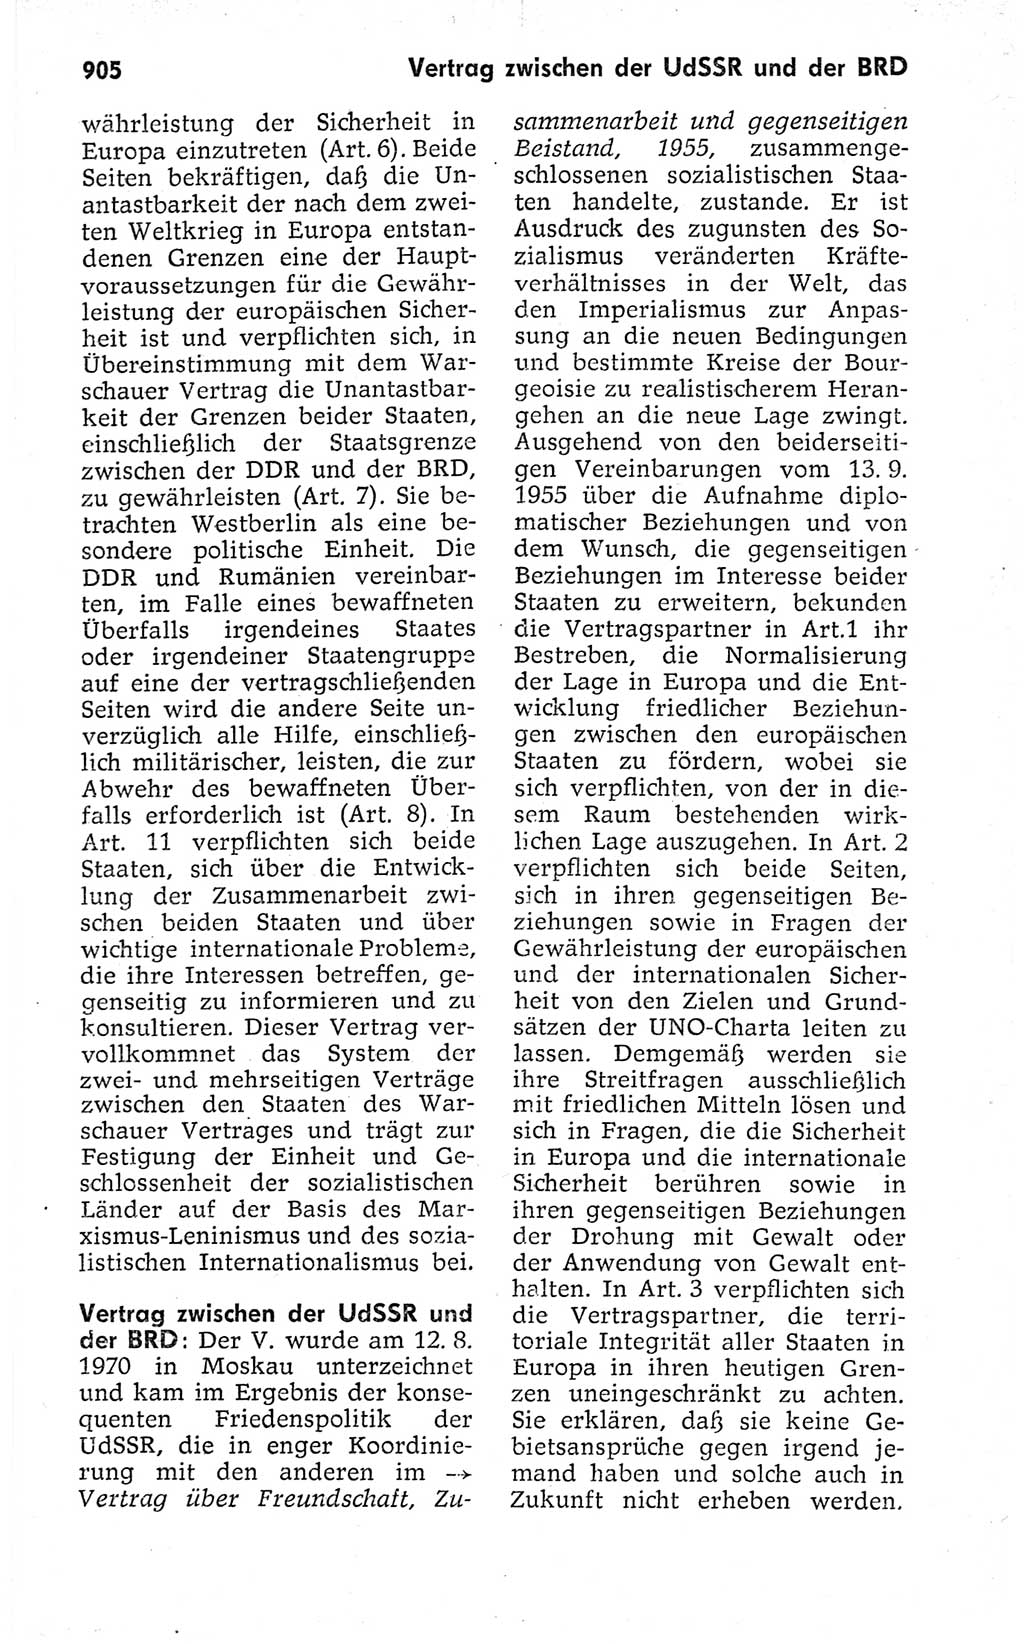 Kleines politisches Wörterbuch [Deutsche Demokratische Republik (DDR)] 1973, Seite 905 (Kl. pol. Wb. DDR 1973, S. 905)